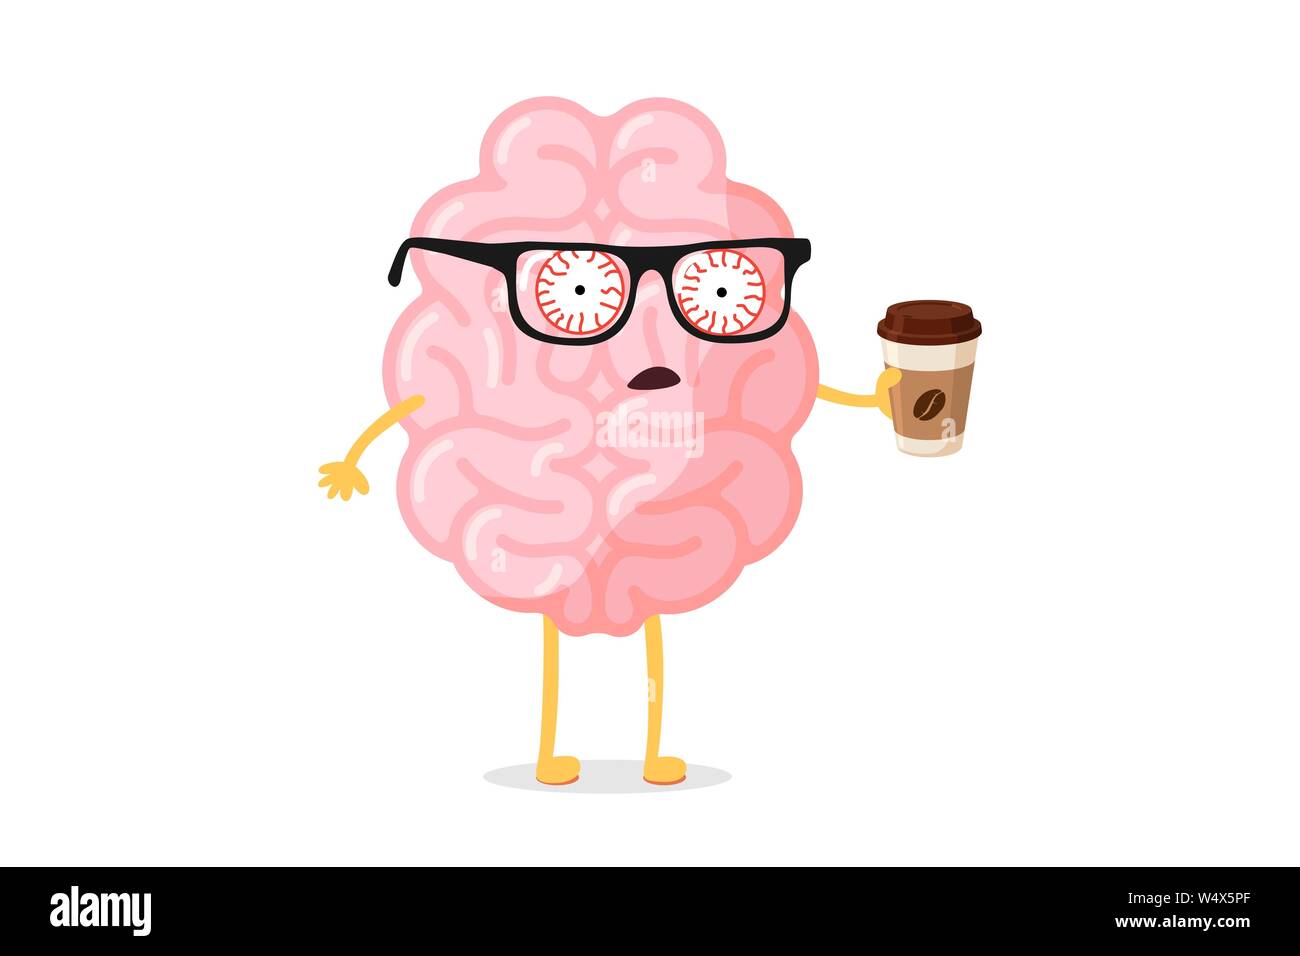 Müde Müdigkeit schlechte Emotion niedlichen Cartoon menschlichen Gehirn Charakter mit heißen Kaffeetasse. Zentrale Nervensystem Organ aufwachen schlecht montag Morgen lustiges Konzept. Vektorgrafik flach Stock Vektor